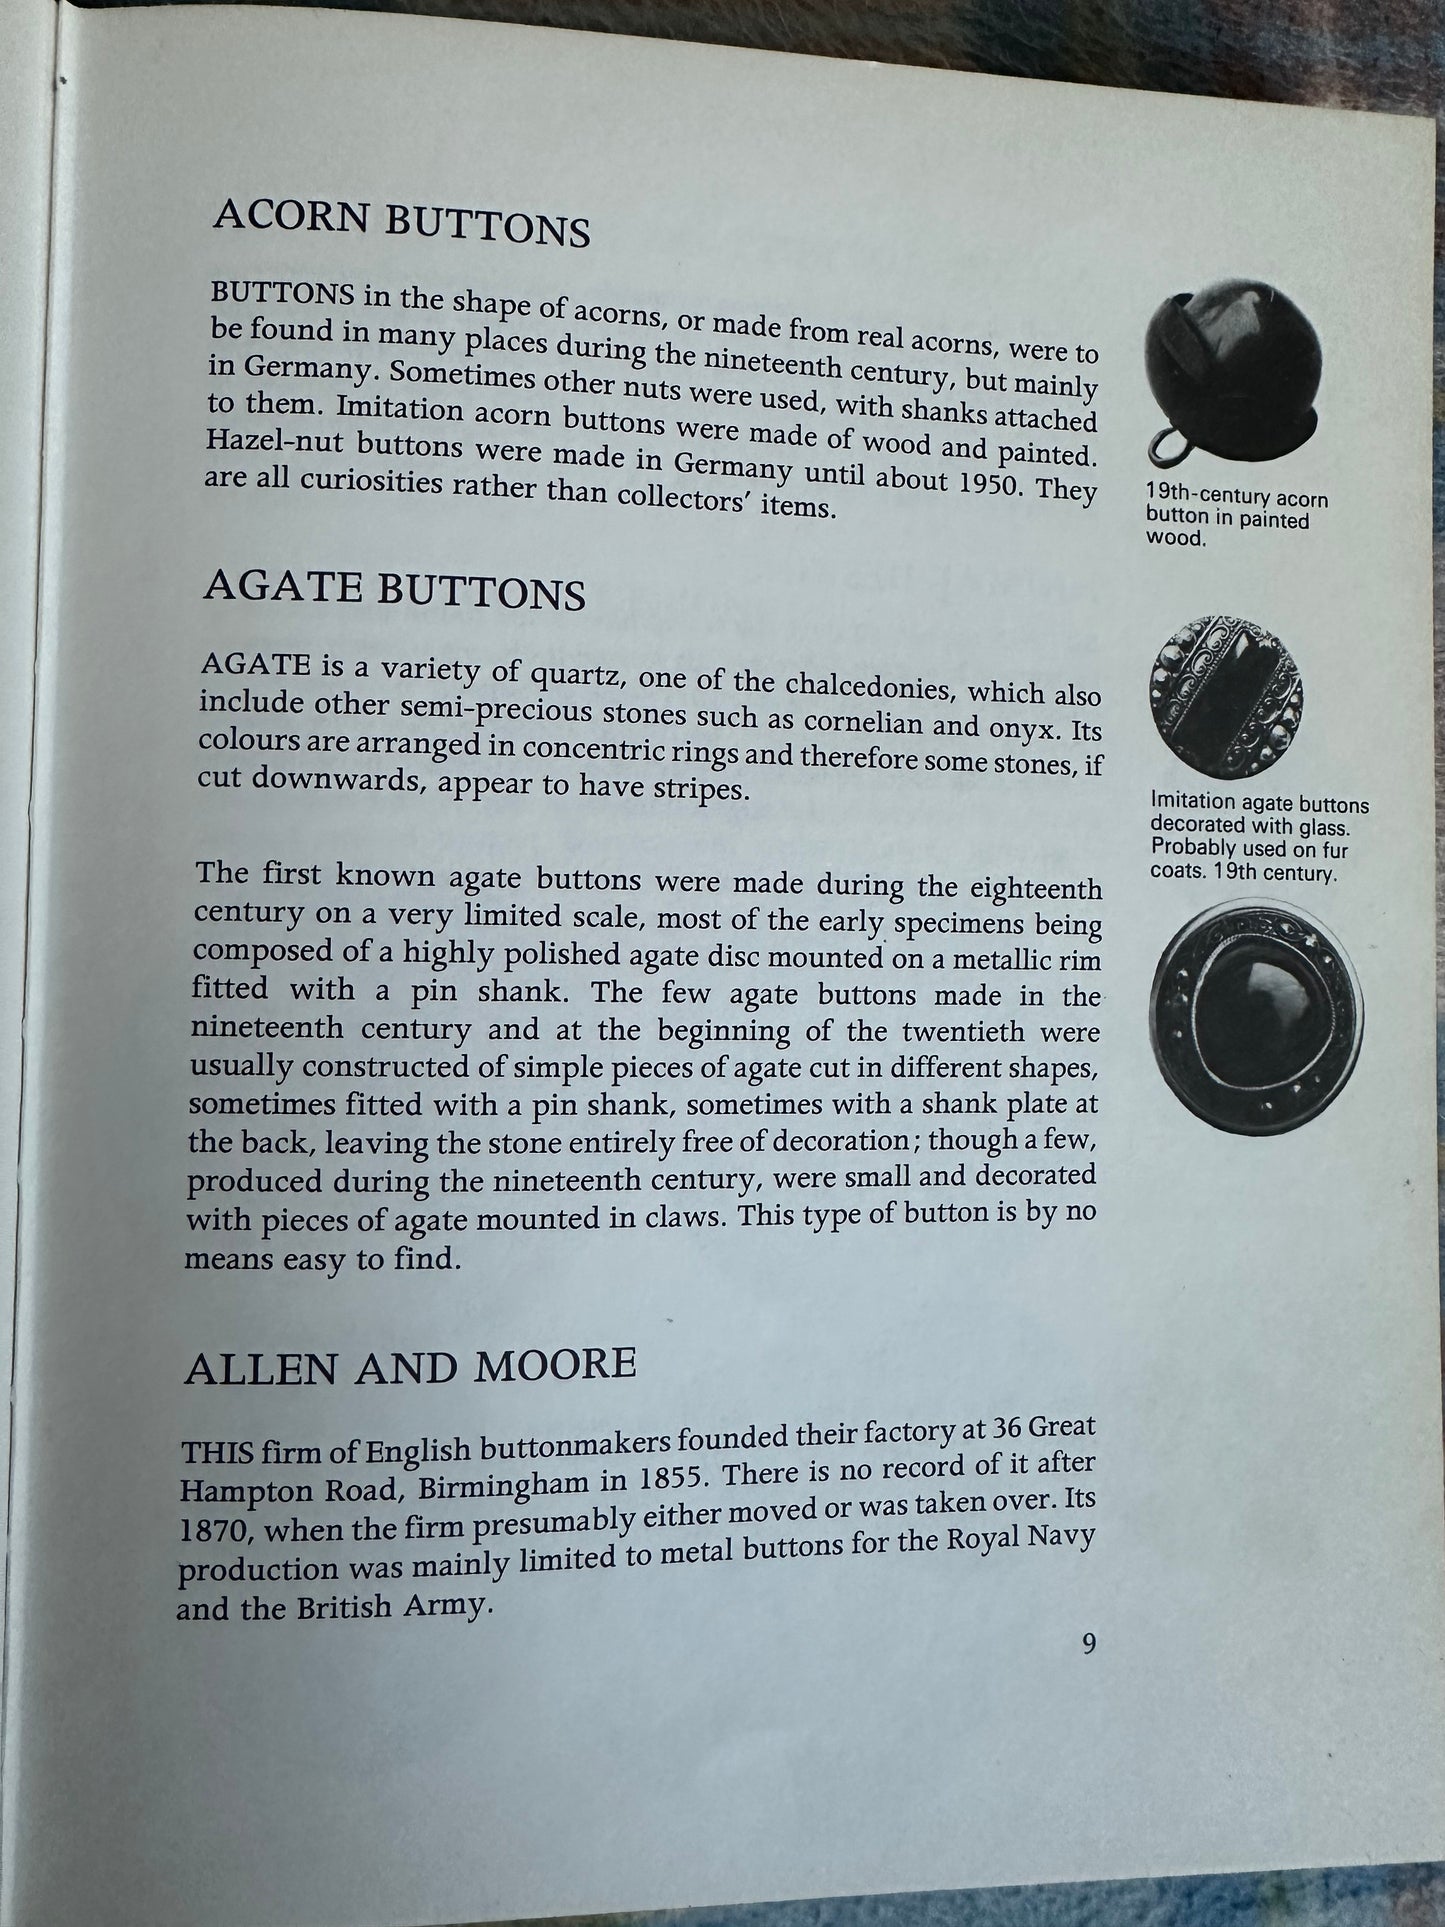 1977*1st* Buttons A Collectors Guide - Victor Houart(Souvenir Press)